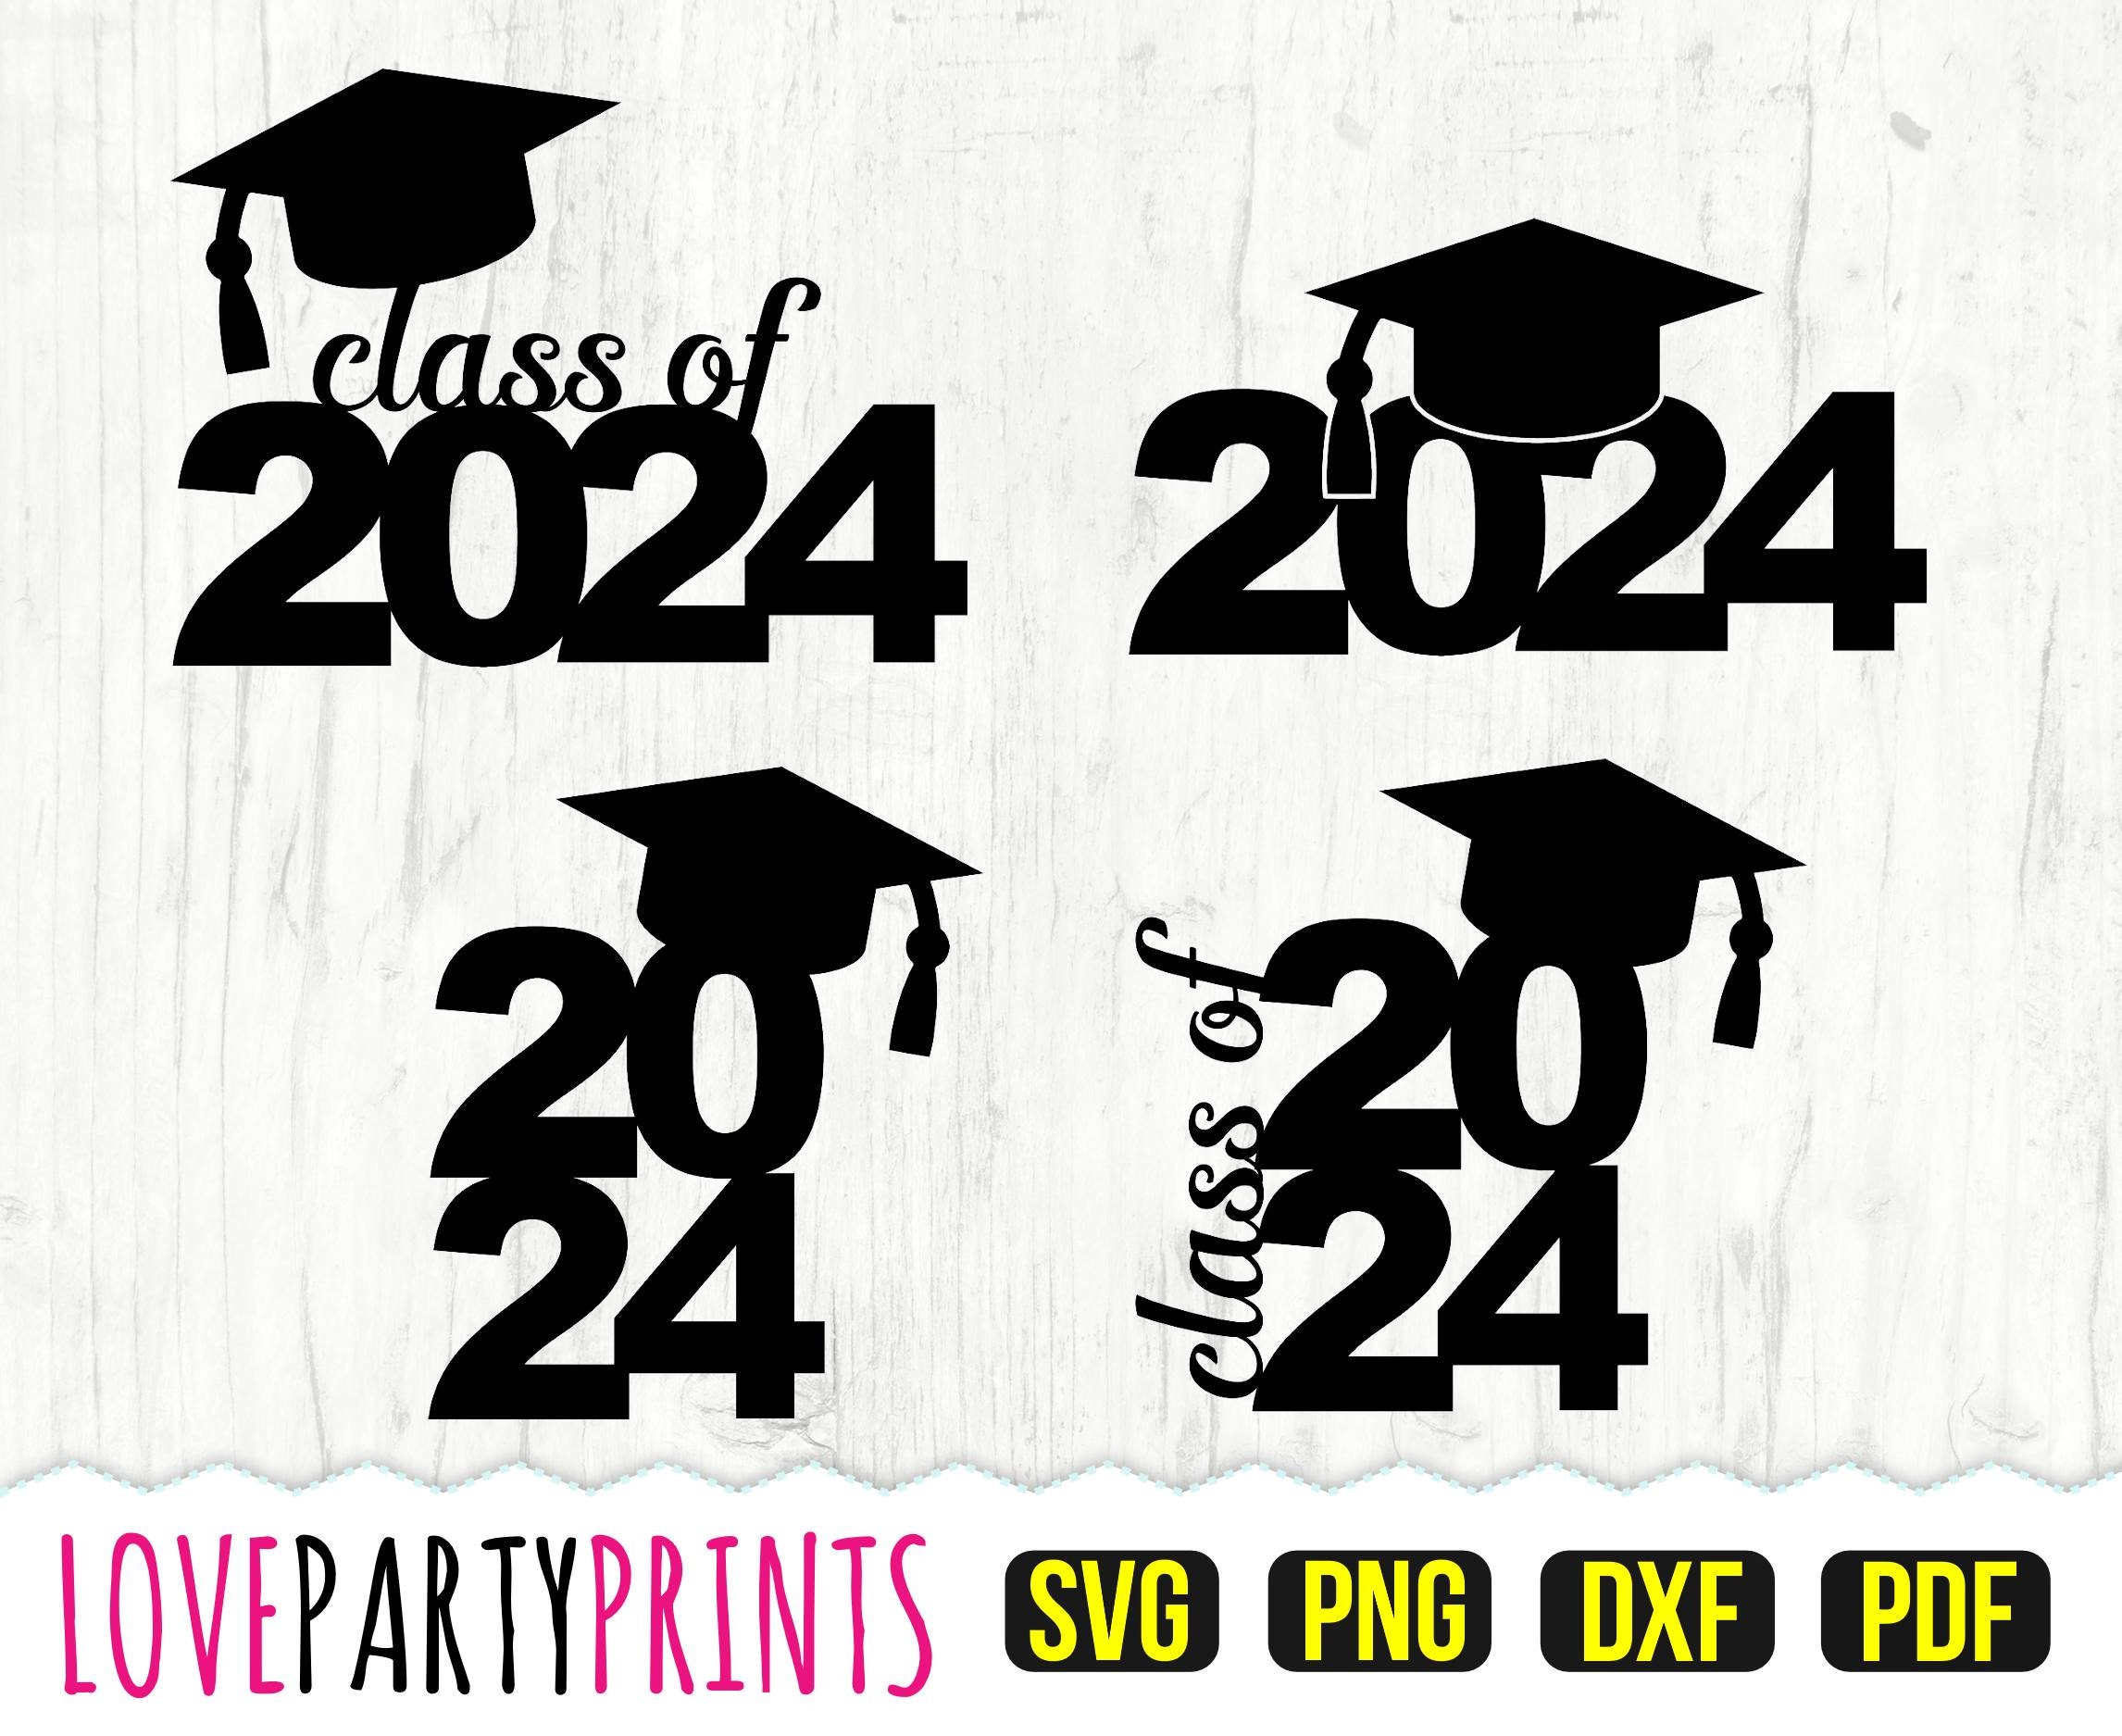 Class of 2024 SVG DXF PNG Pdf Graduation 2024 Svg Etsy UK